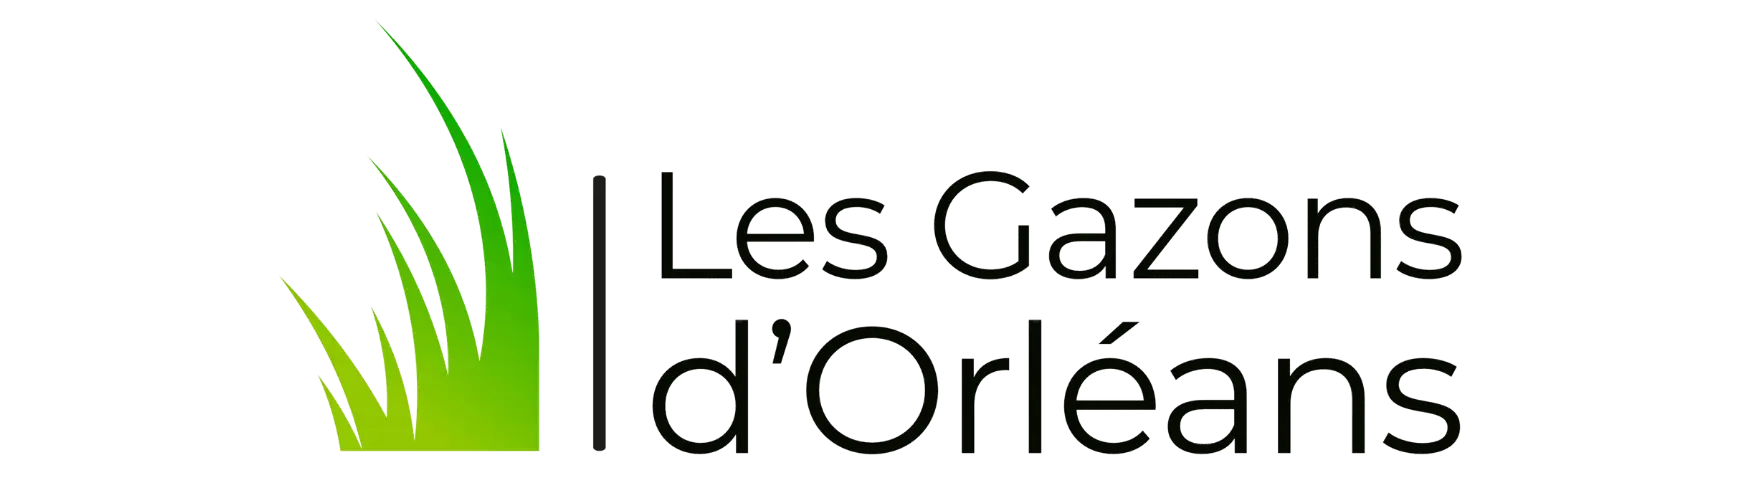 Logo Les Gazons d'Orléans